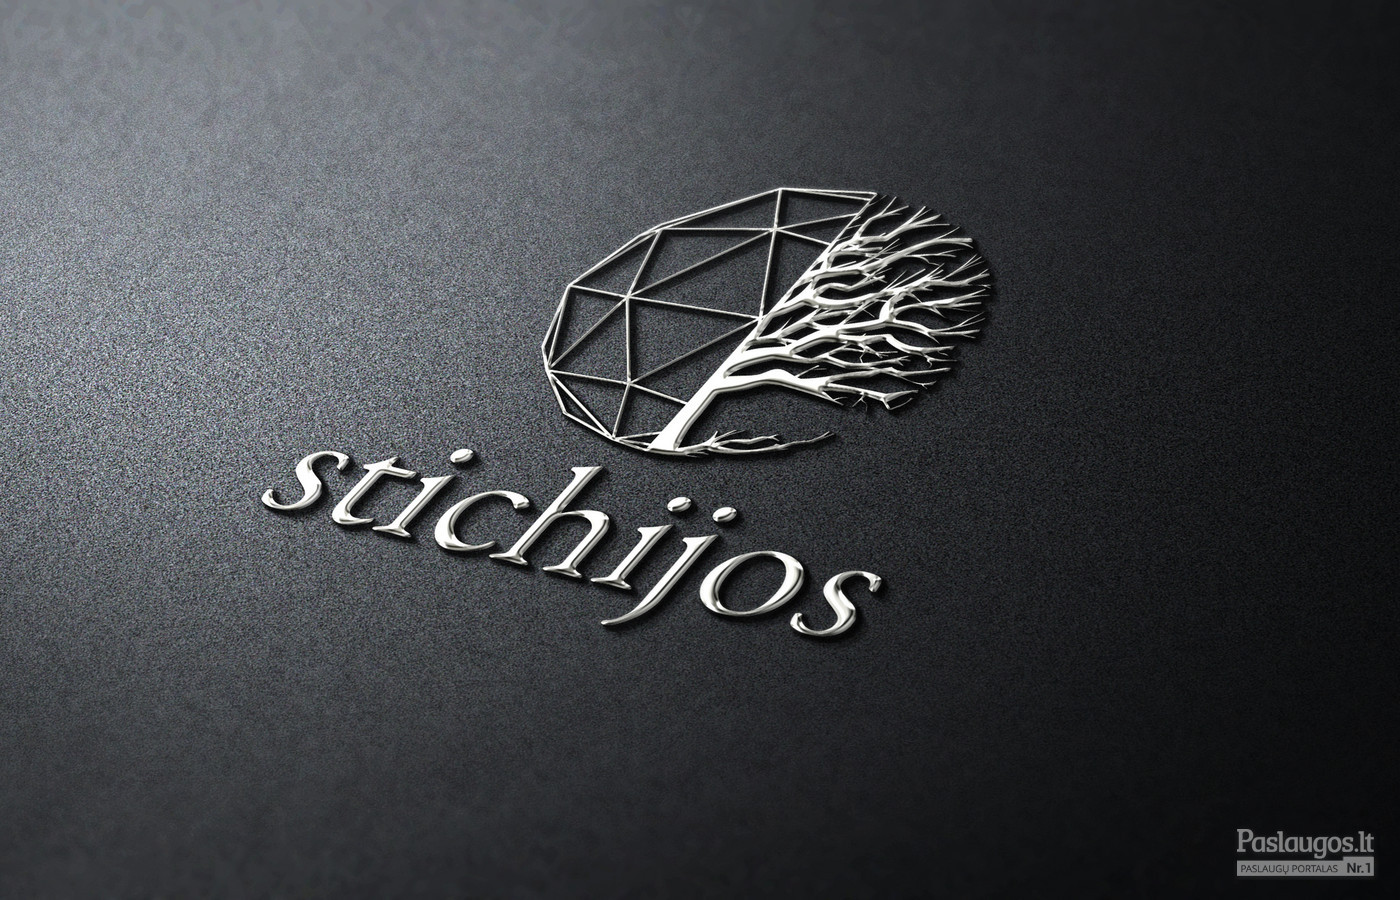 Stichijos - kupolų nuoma   |   Logotipų kūrimas - www.glogo.eu - logo creation.